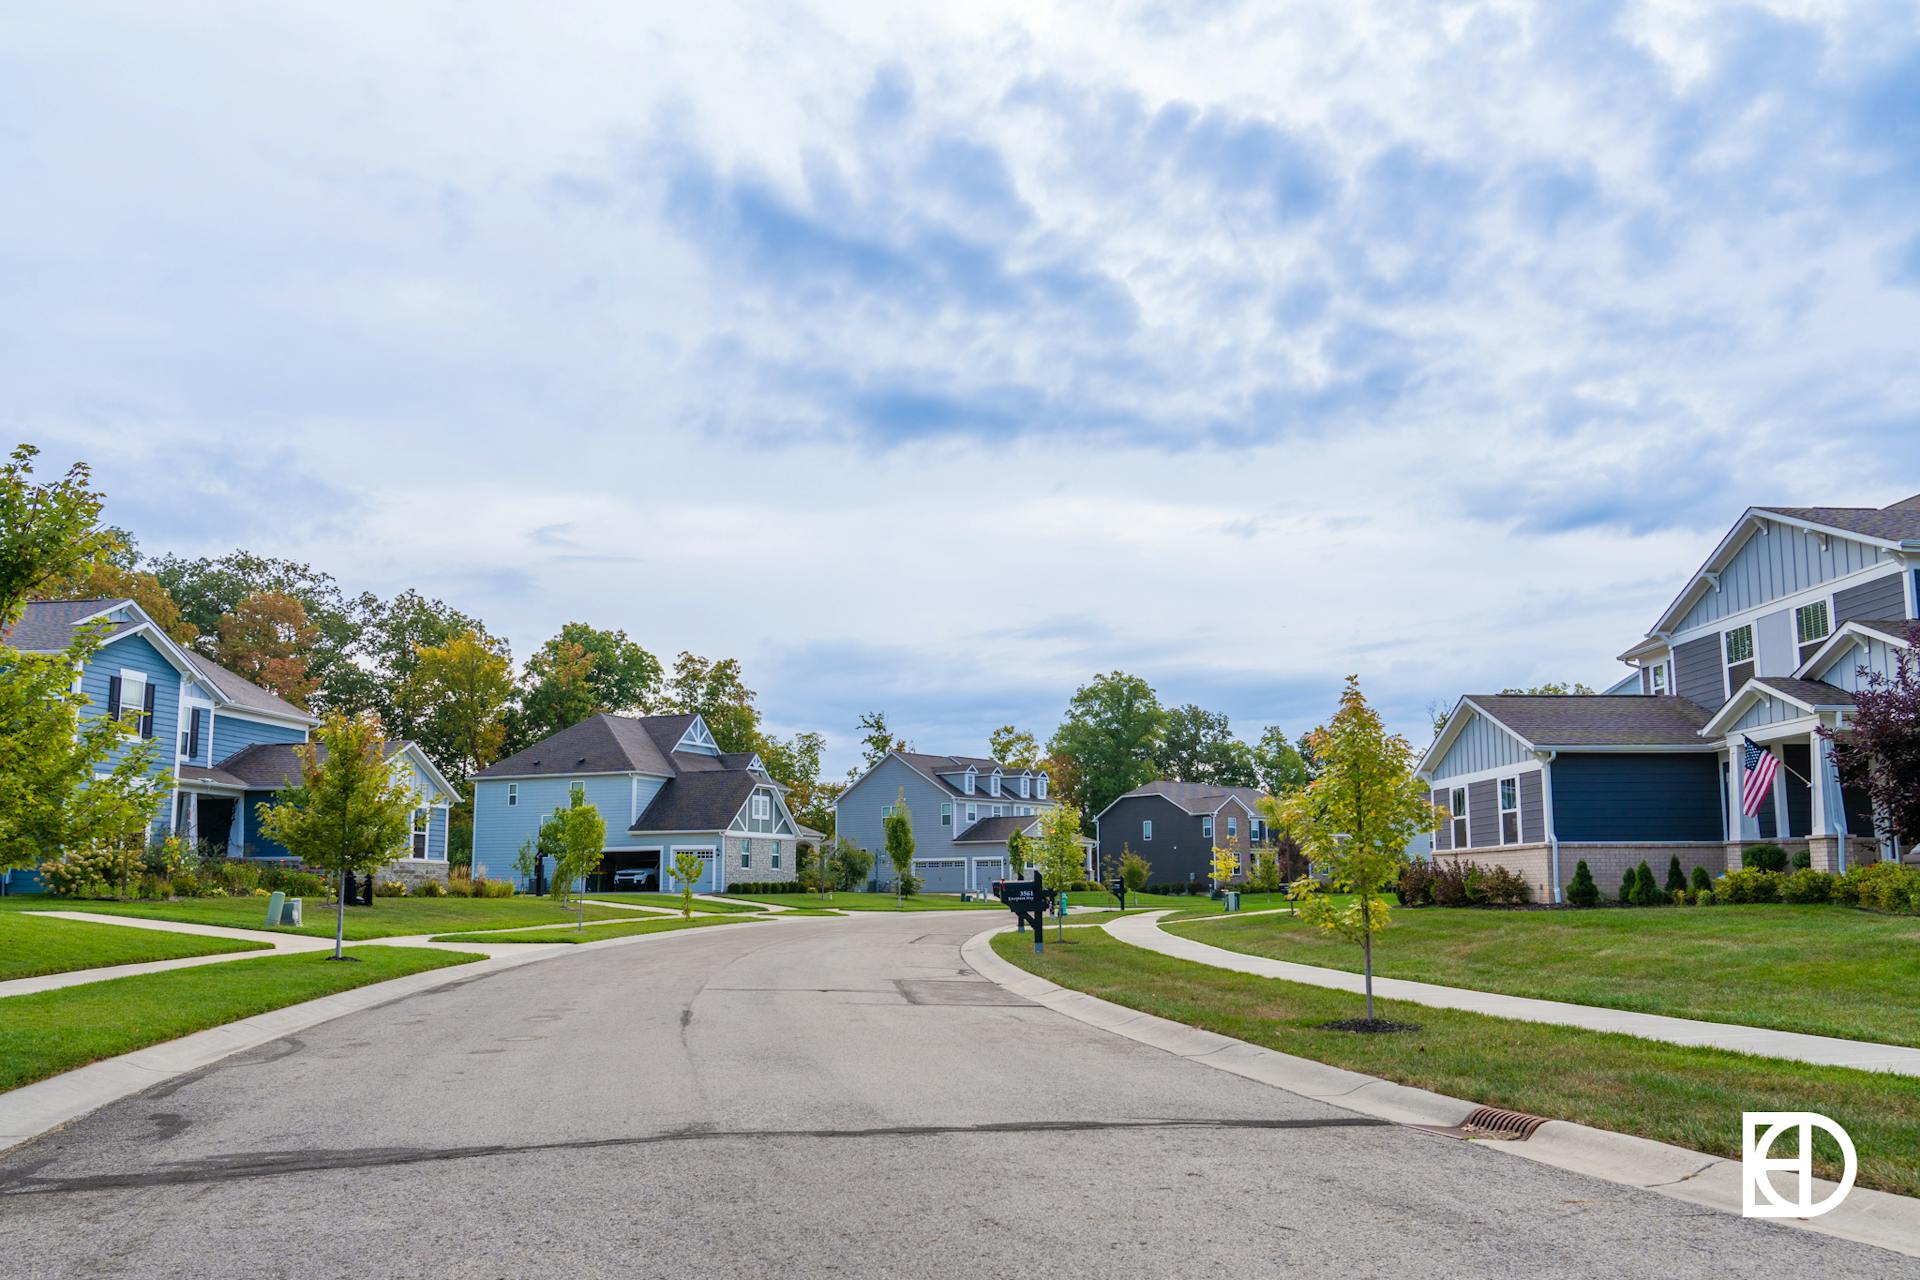 Photo of street view of Hidden Pines neighborhood in Zionsville, Indiana.